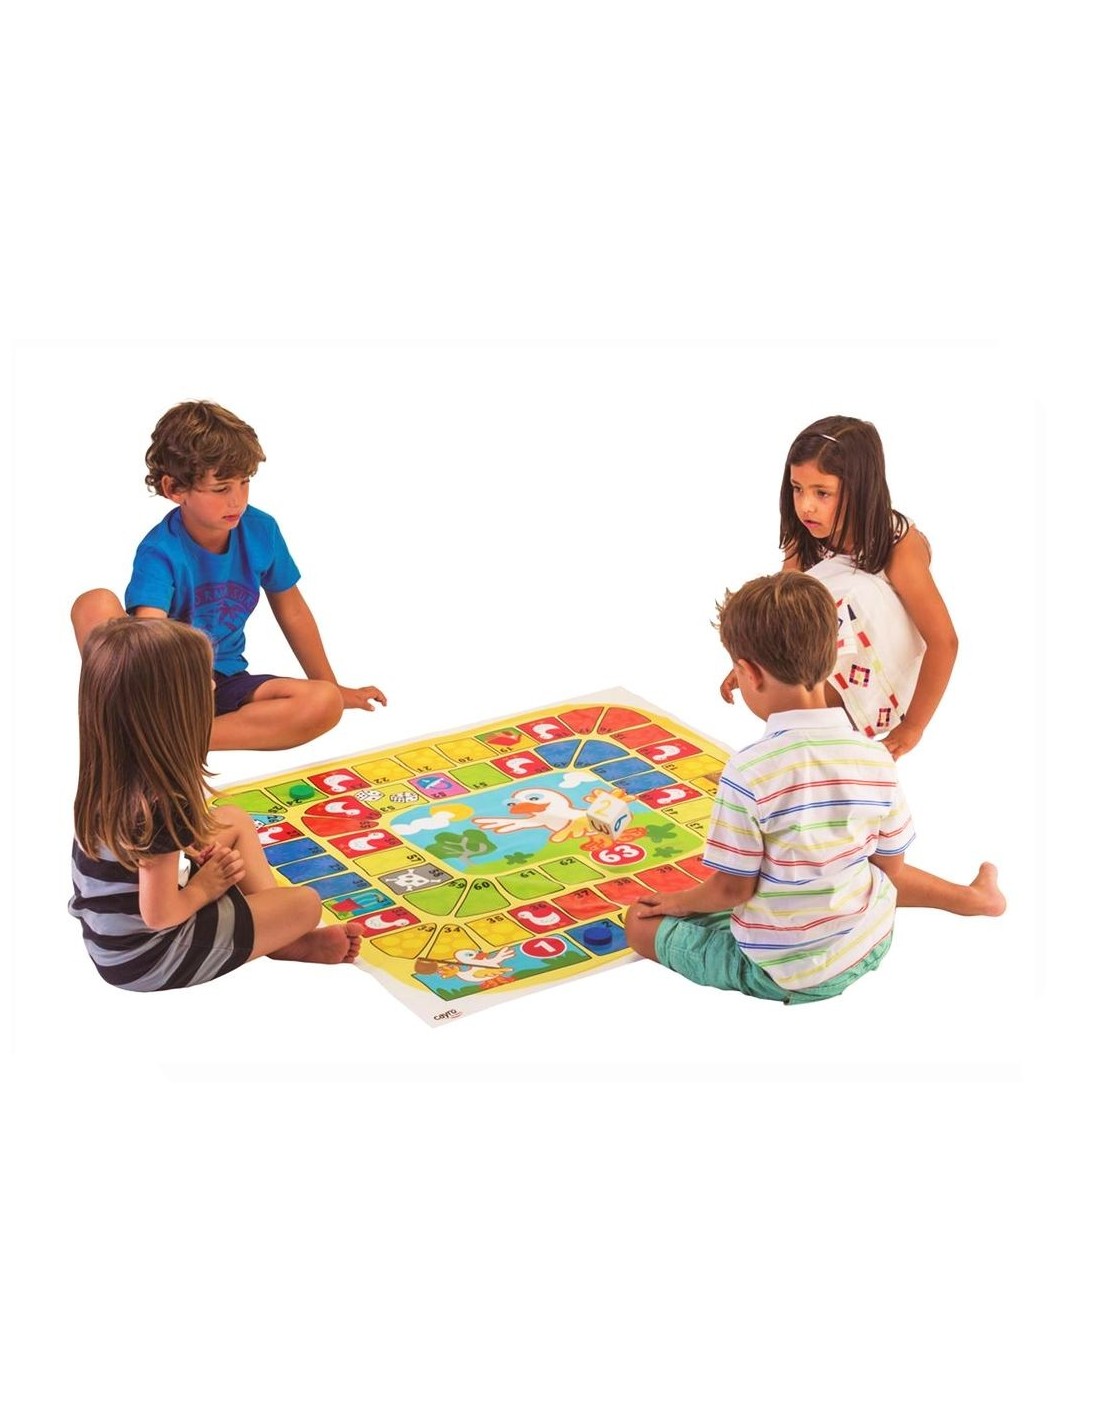 juegos de mesa familiares Juegos de mesa 43761 juguetes niños 3 años juego de suelo juego de suelo niños juego de la oca juegos de mesa para niños juegos educativos Oca gigante ColorBaby 